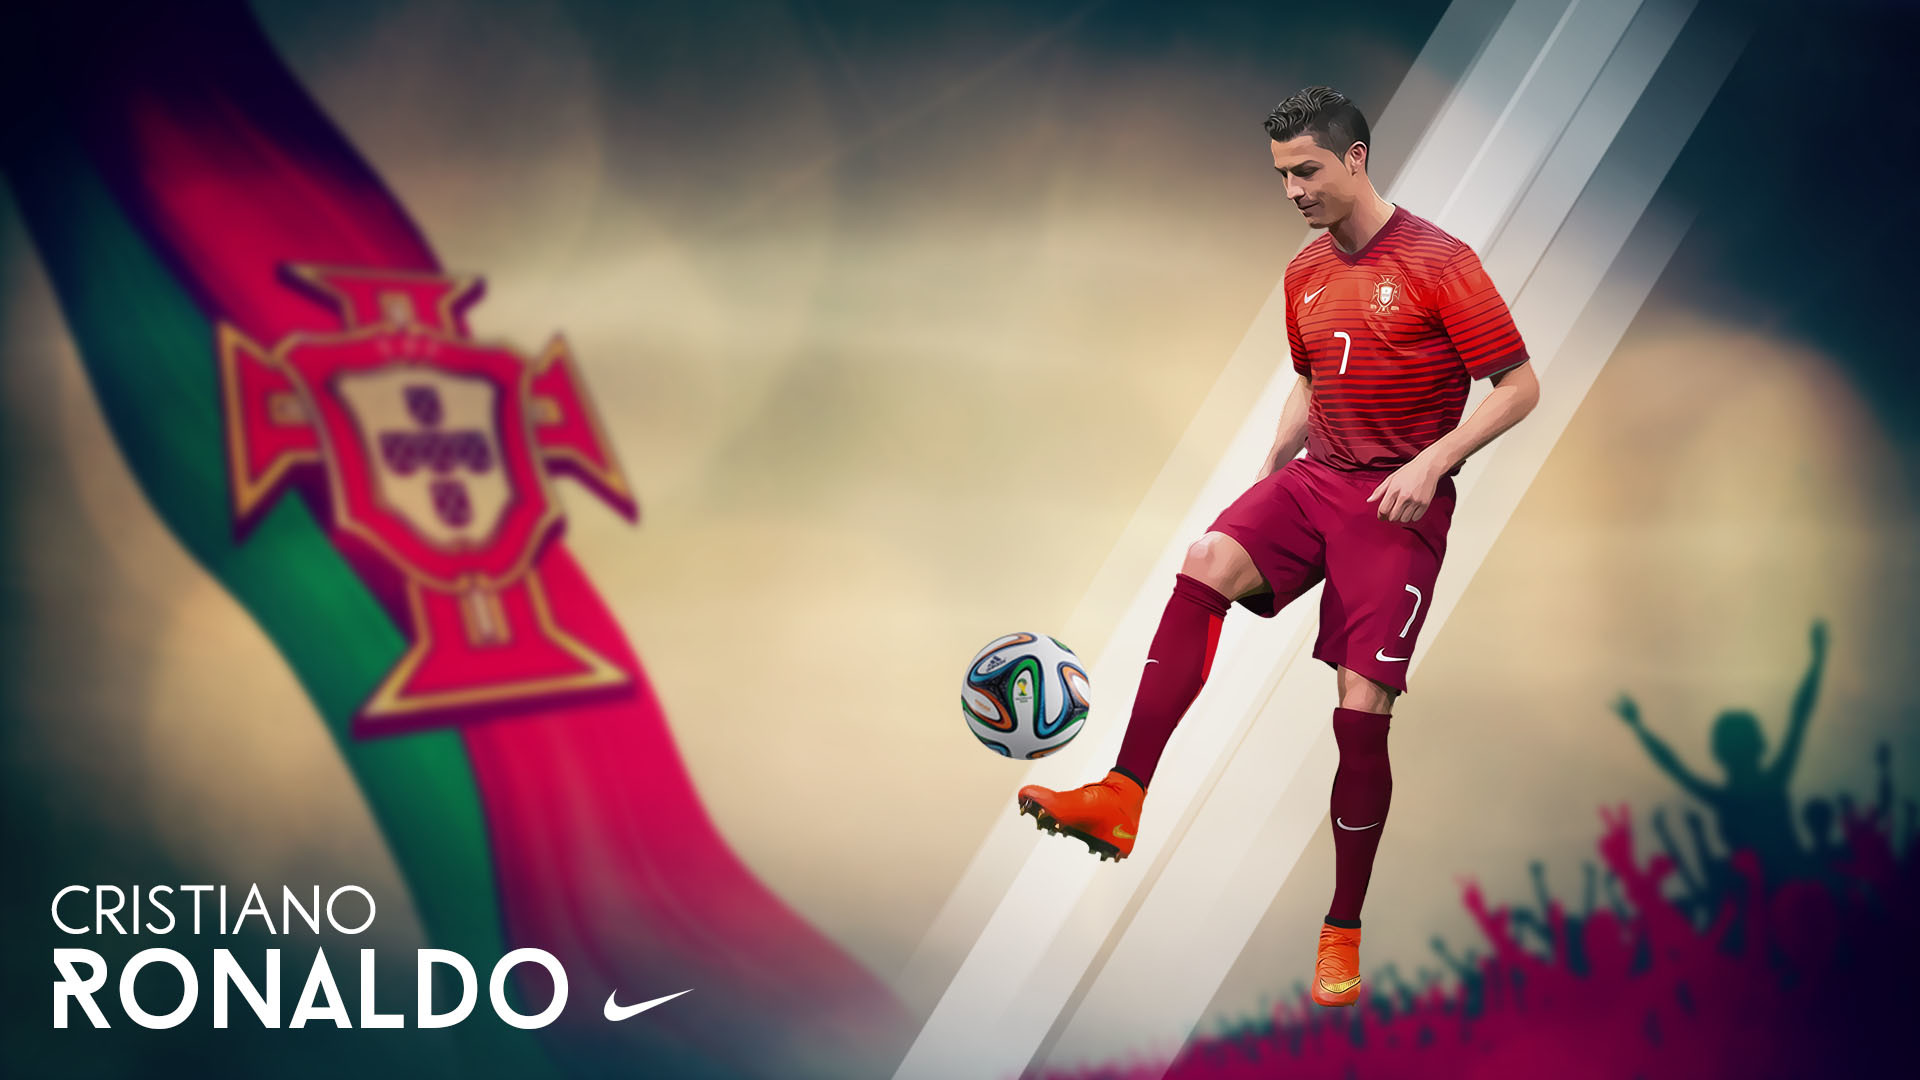 1920x1080 Cristiano Ronaldo Full HD Wallpaper 